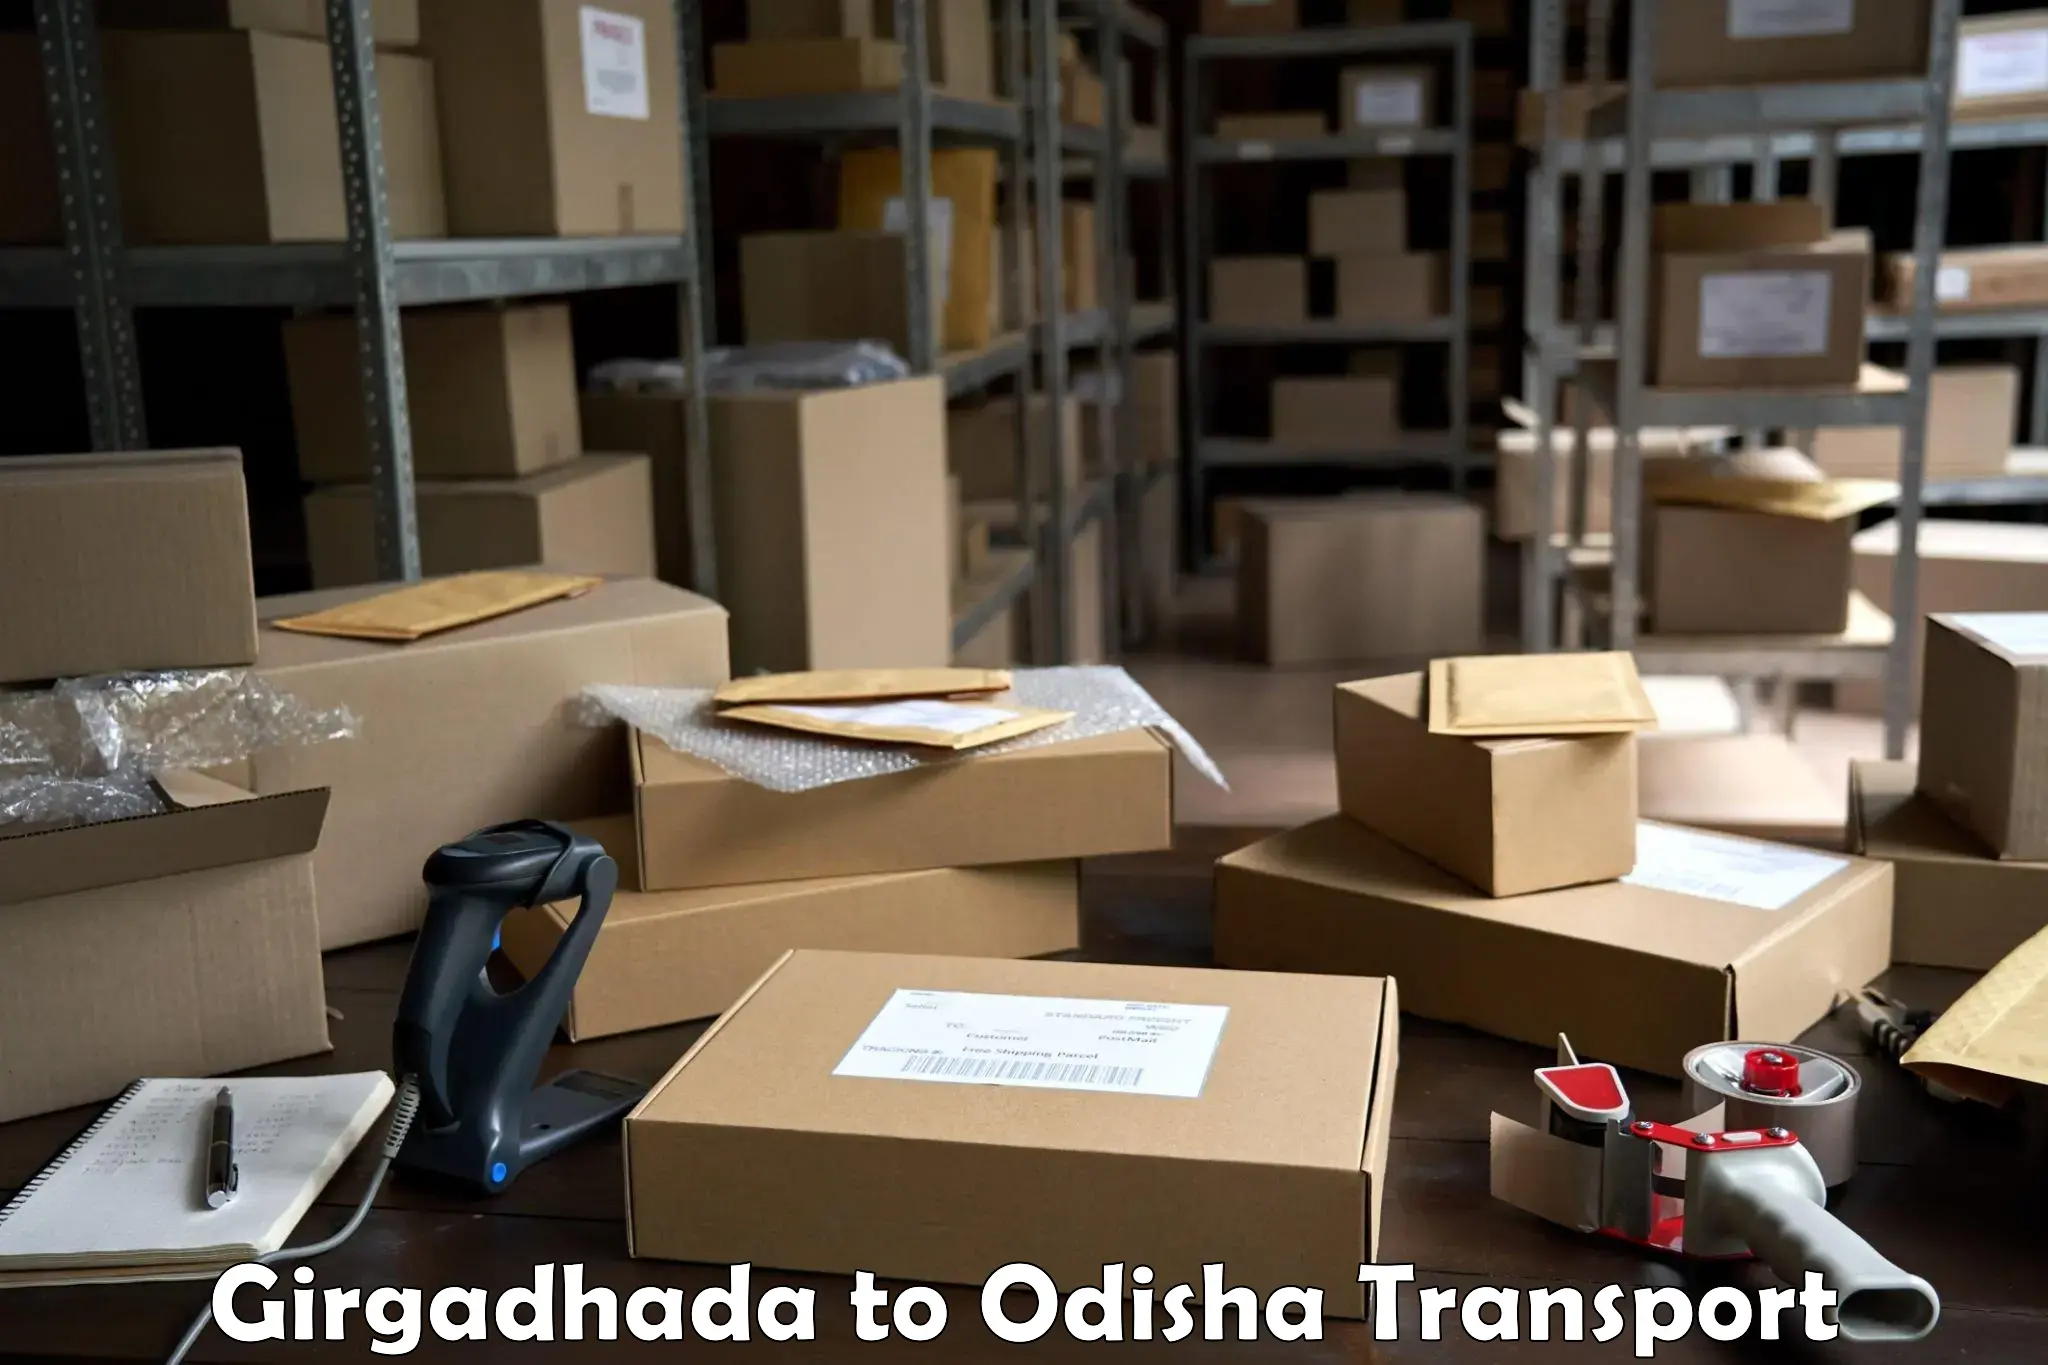 Furniture transport service Girgadhada to Titilagarh